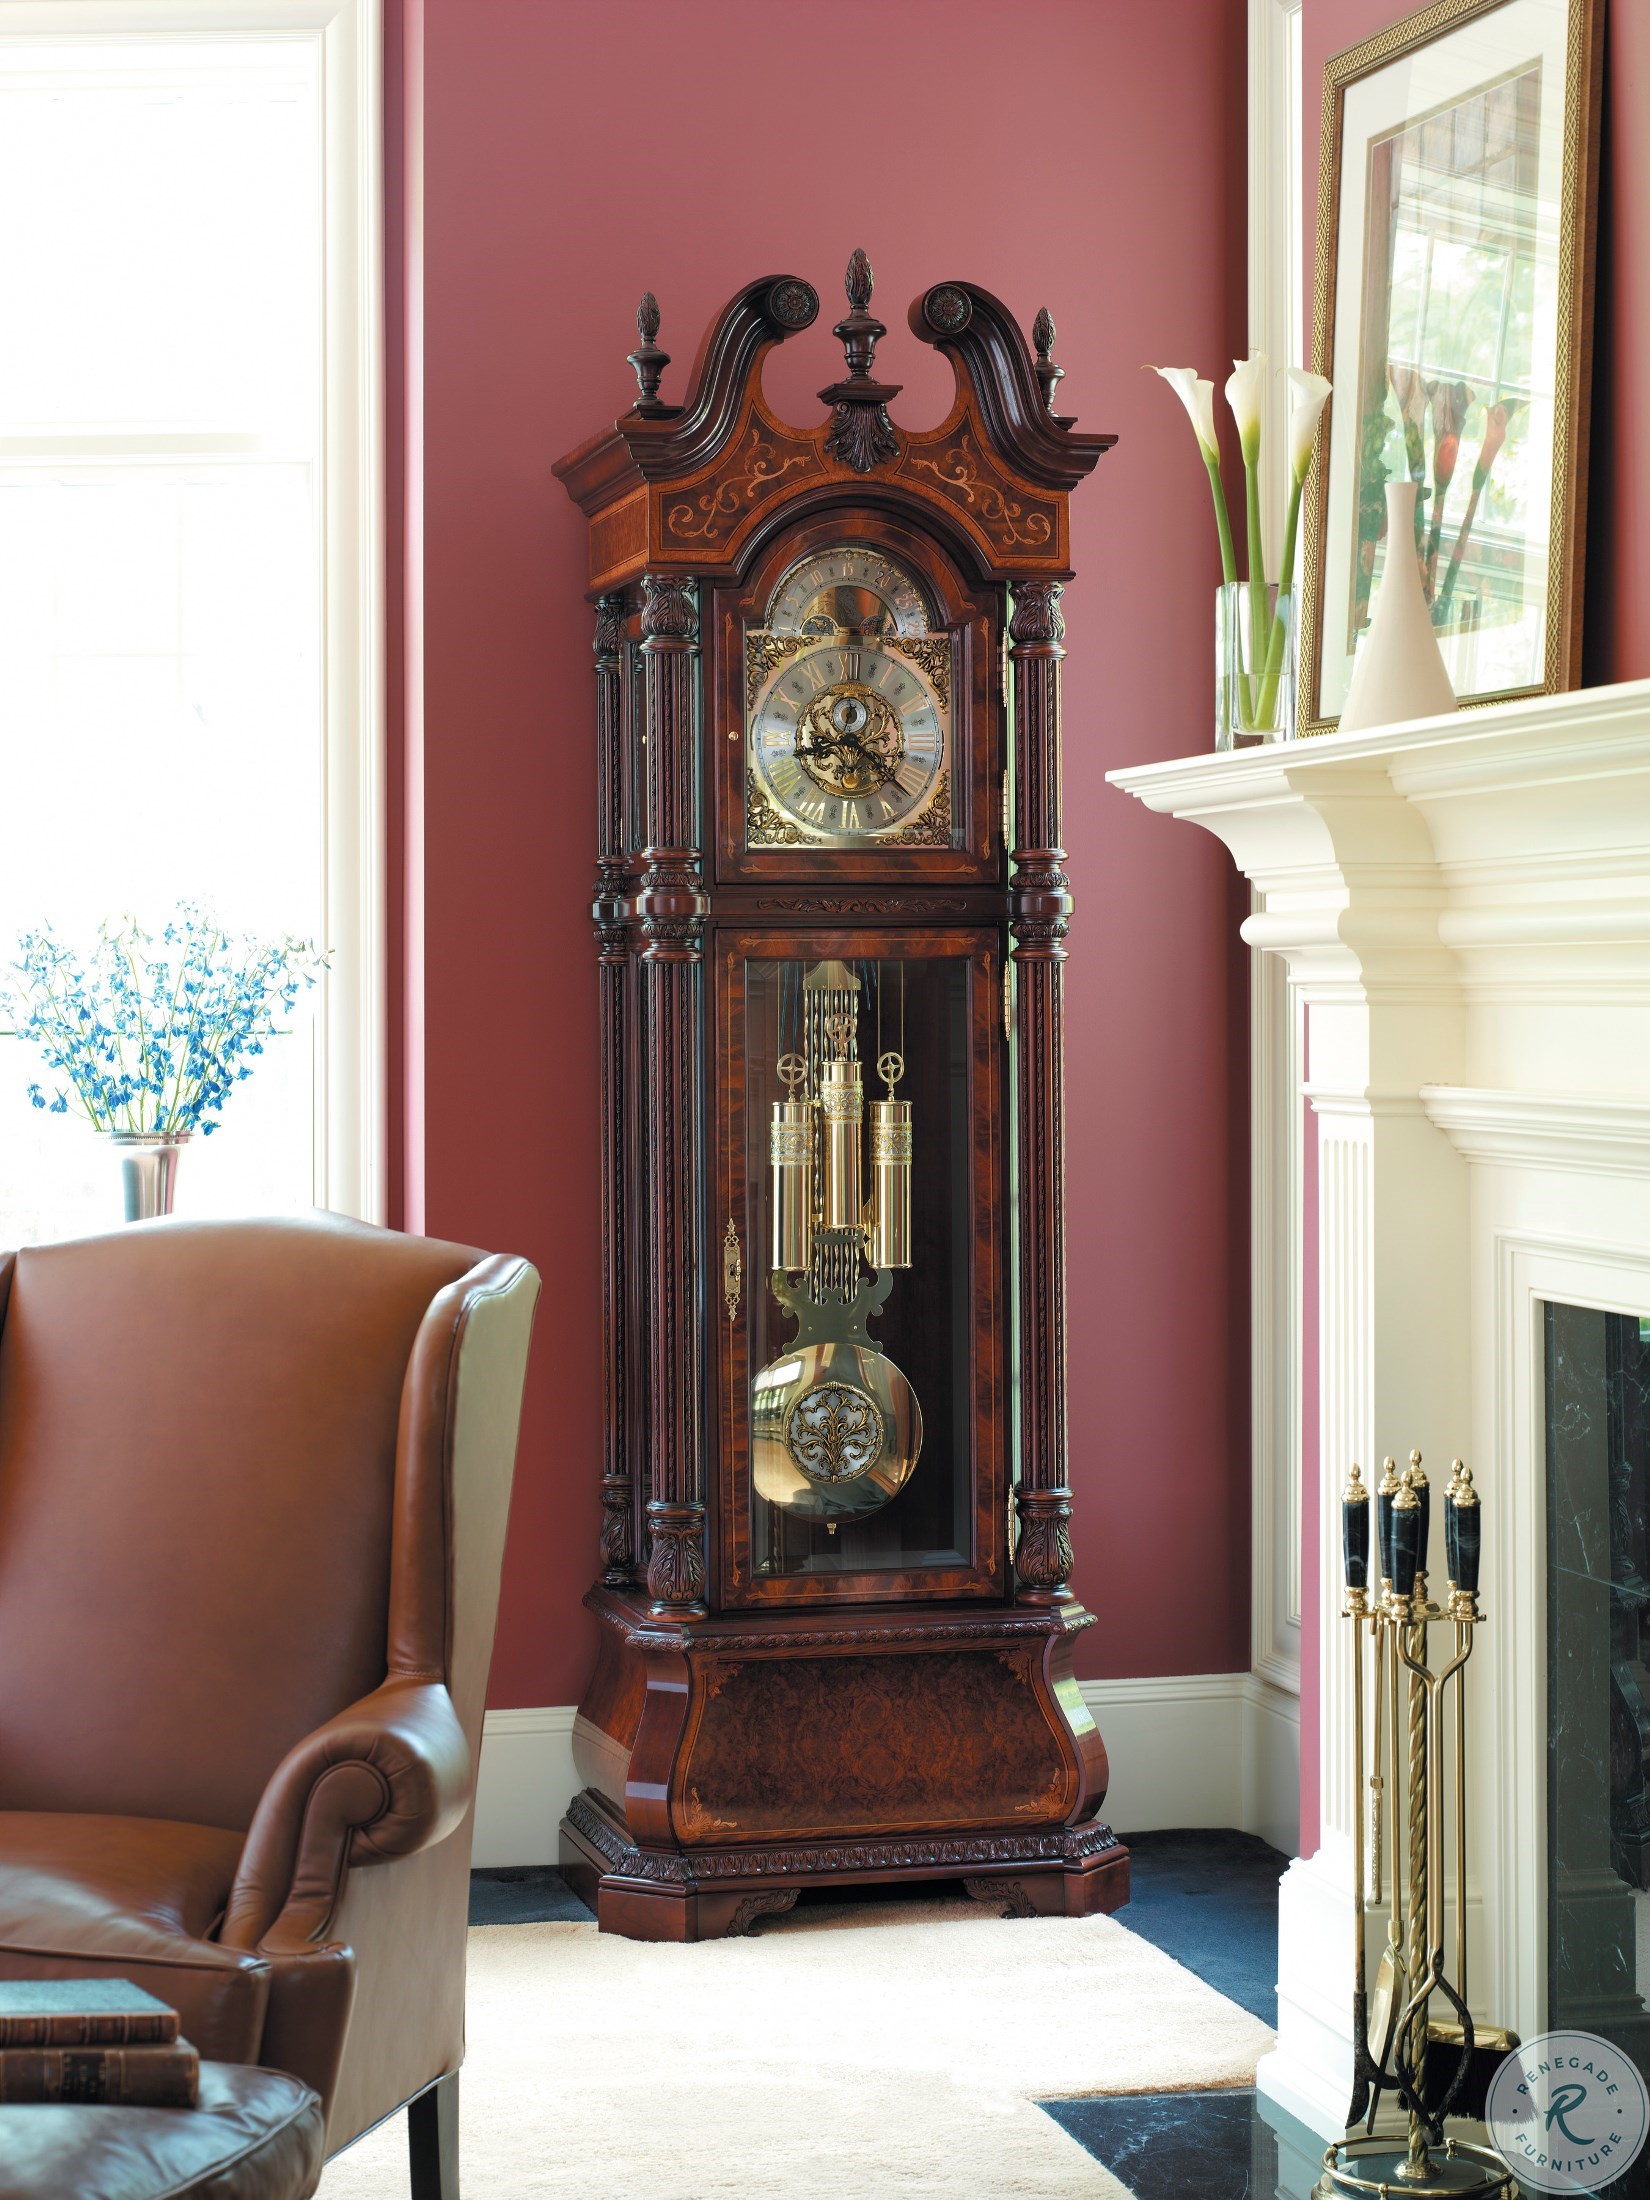 The J. H. Miller Floor Clock